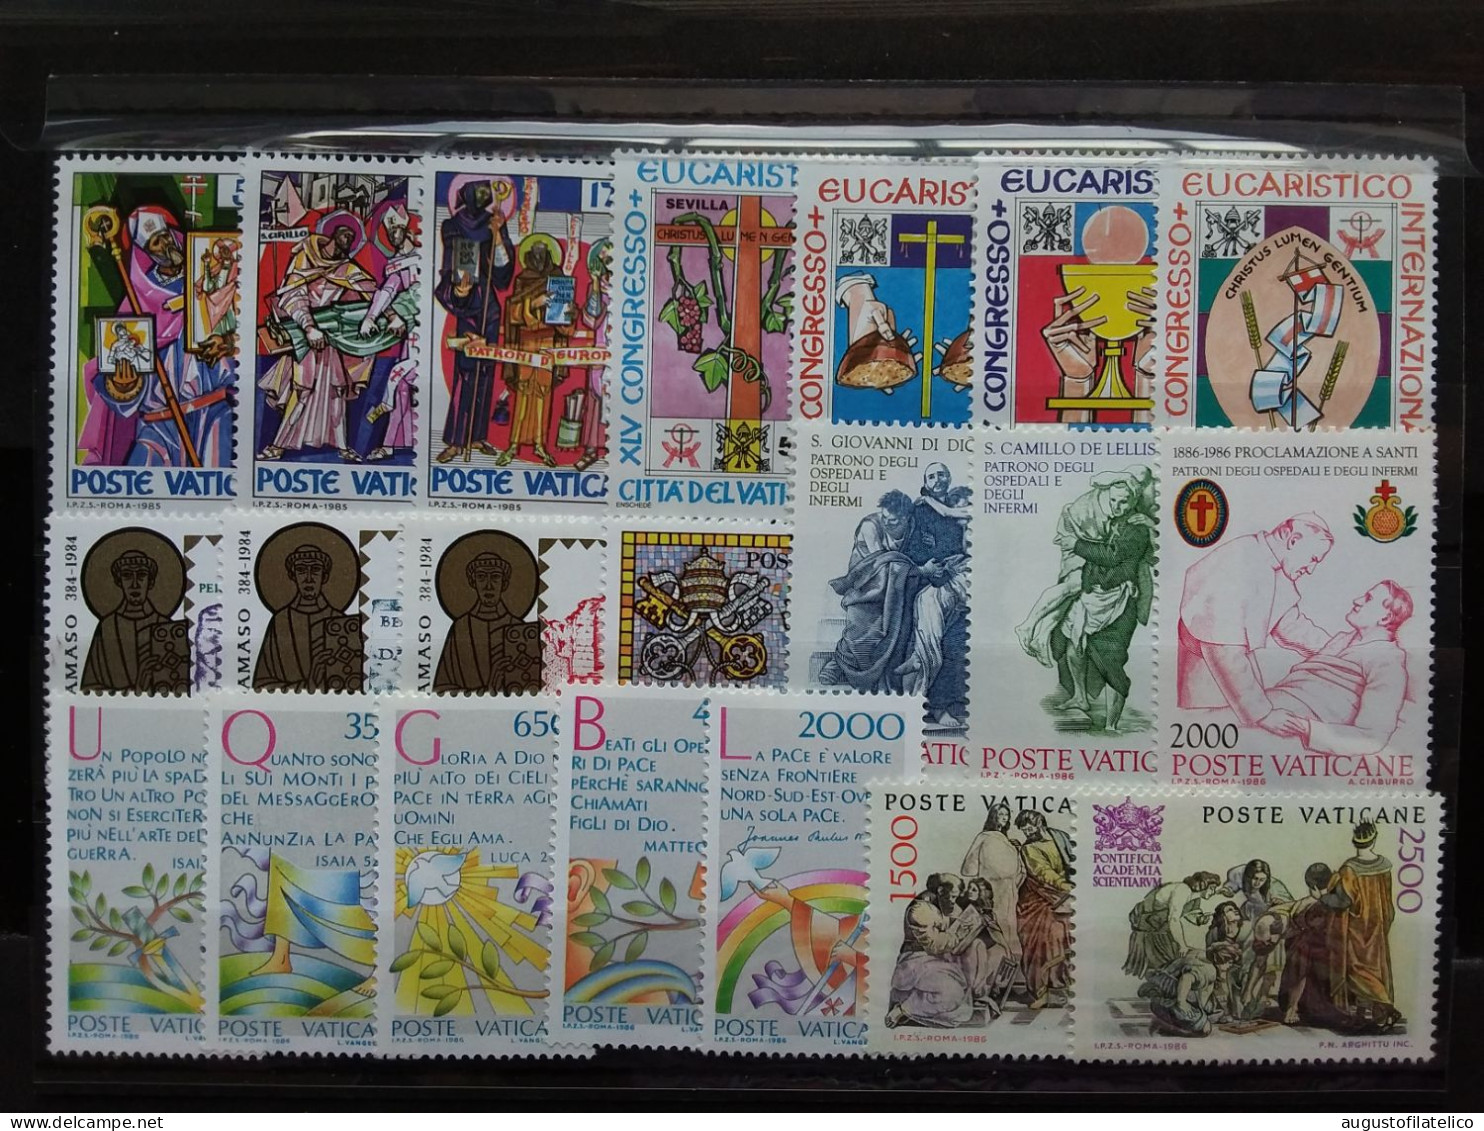 VATICANO - Papa Giovanni Paolo II - Seeie Complete Nuove ** - Facciale Euro 11,45 (sottofacciale) + Spese Postali - Unused Stamps